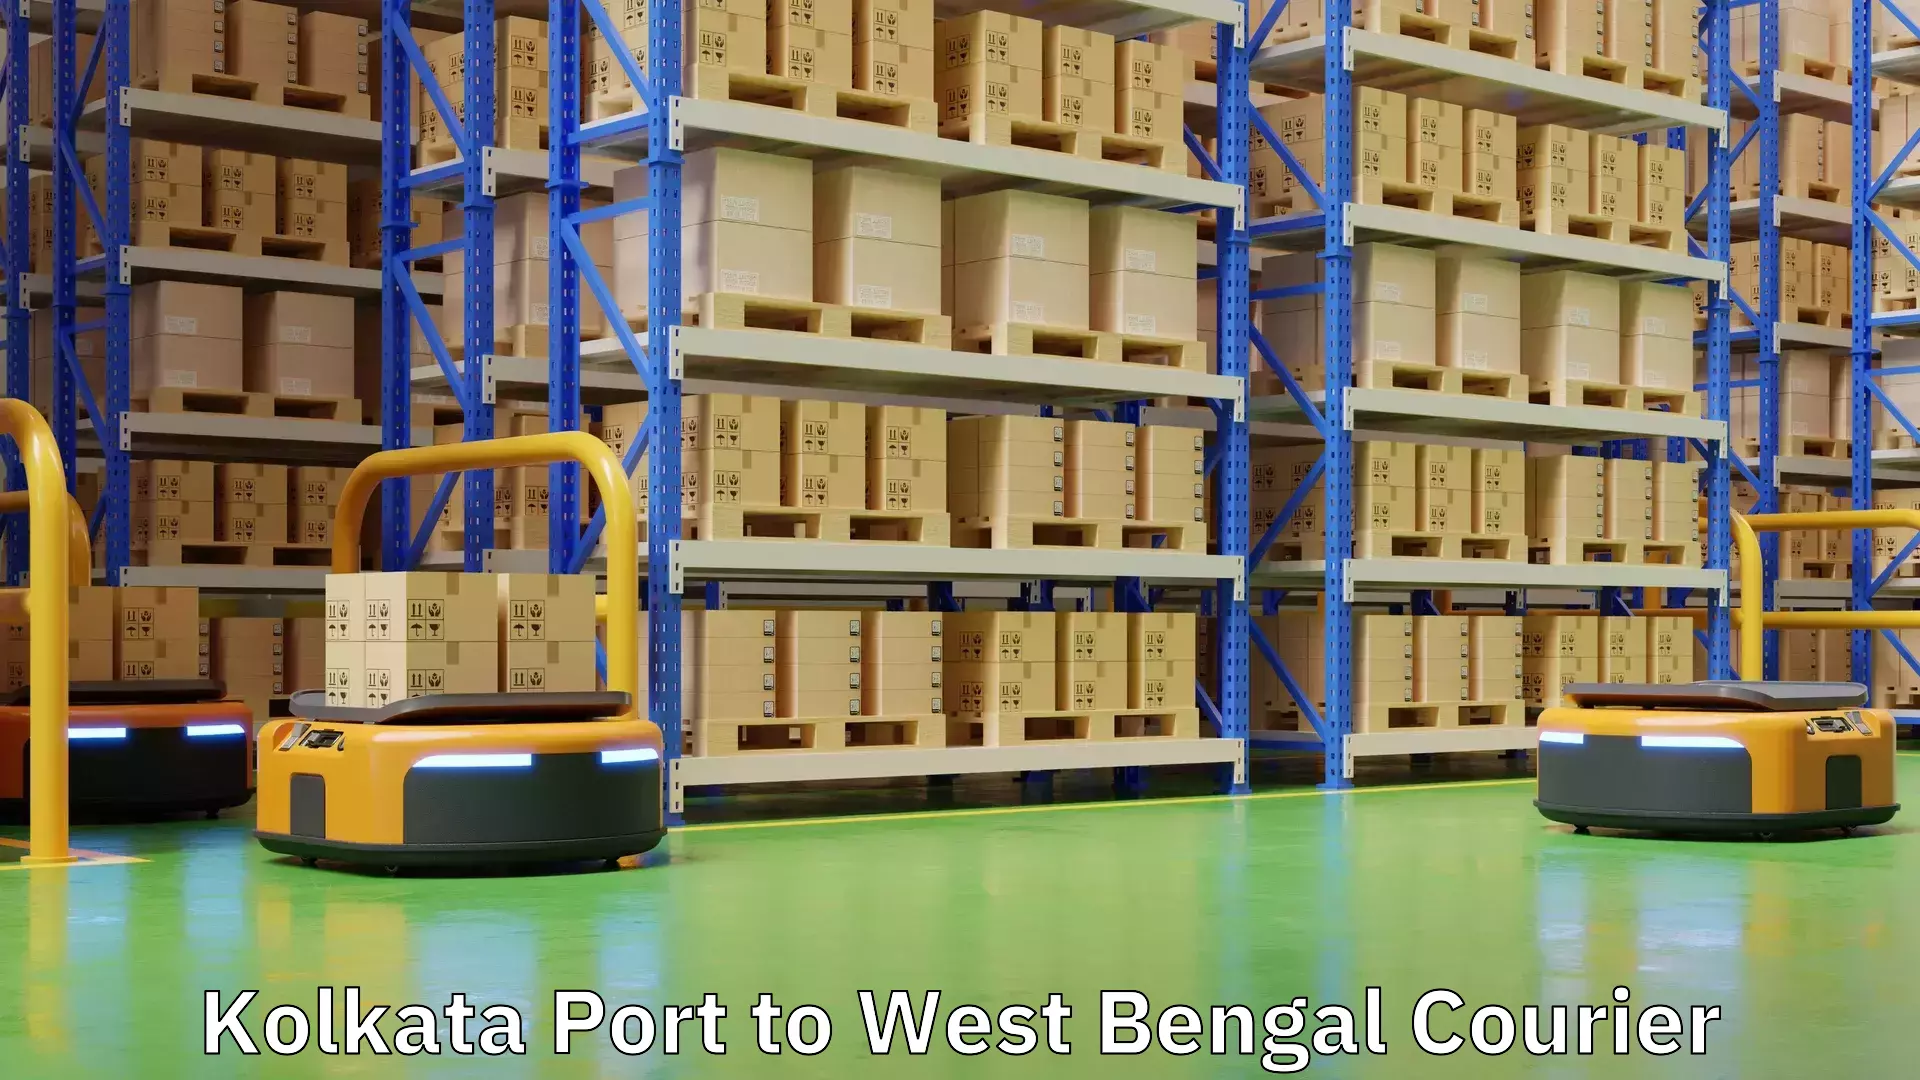 Round-the-clock parcel delivery in Kolkata Port to Kolkata